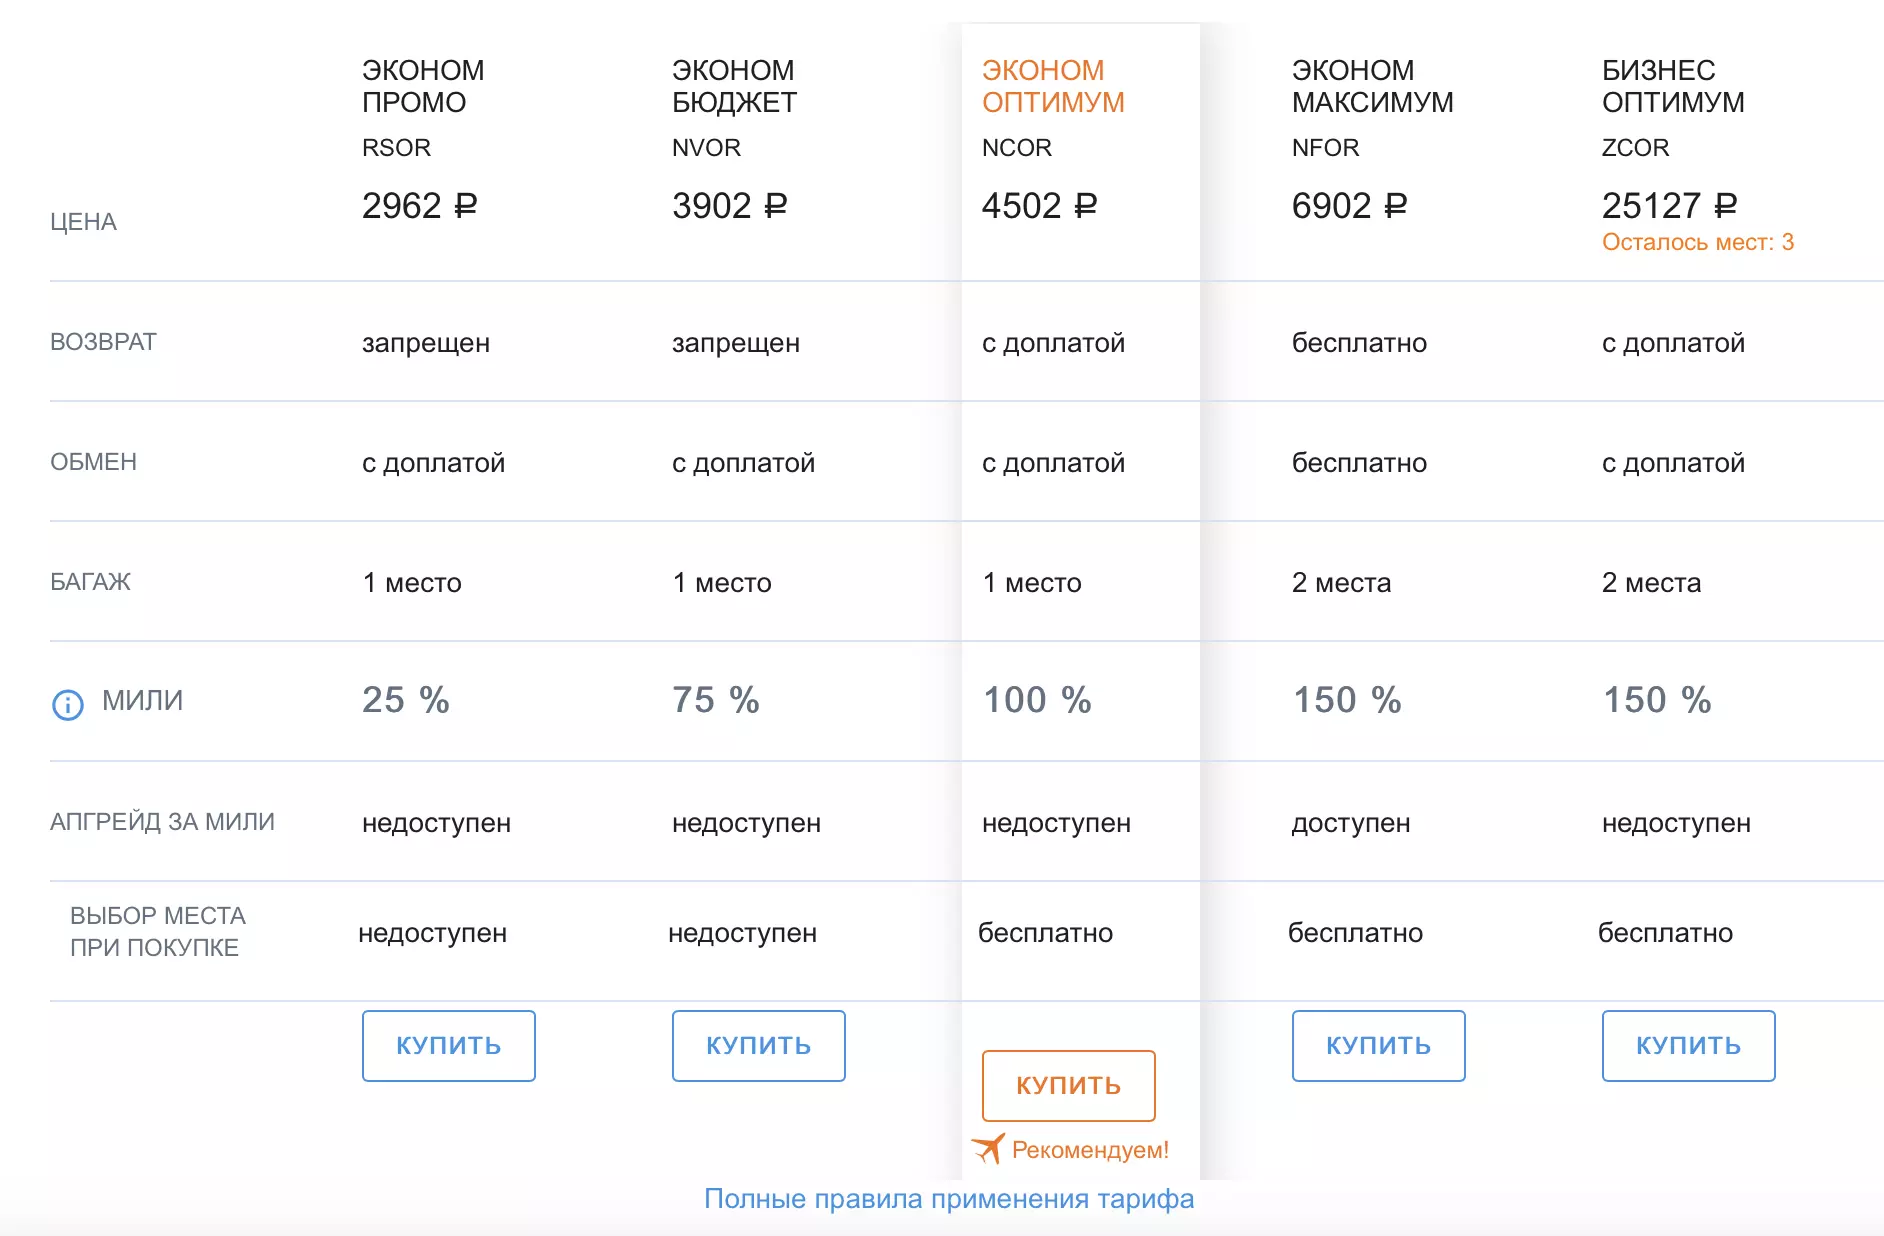 Промокоды аэрофлота【скидки до 53%】все бонусы и купоны августа 2021 — 3dnews.ru